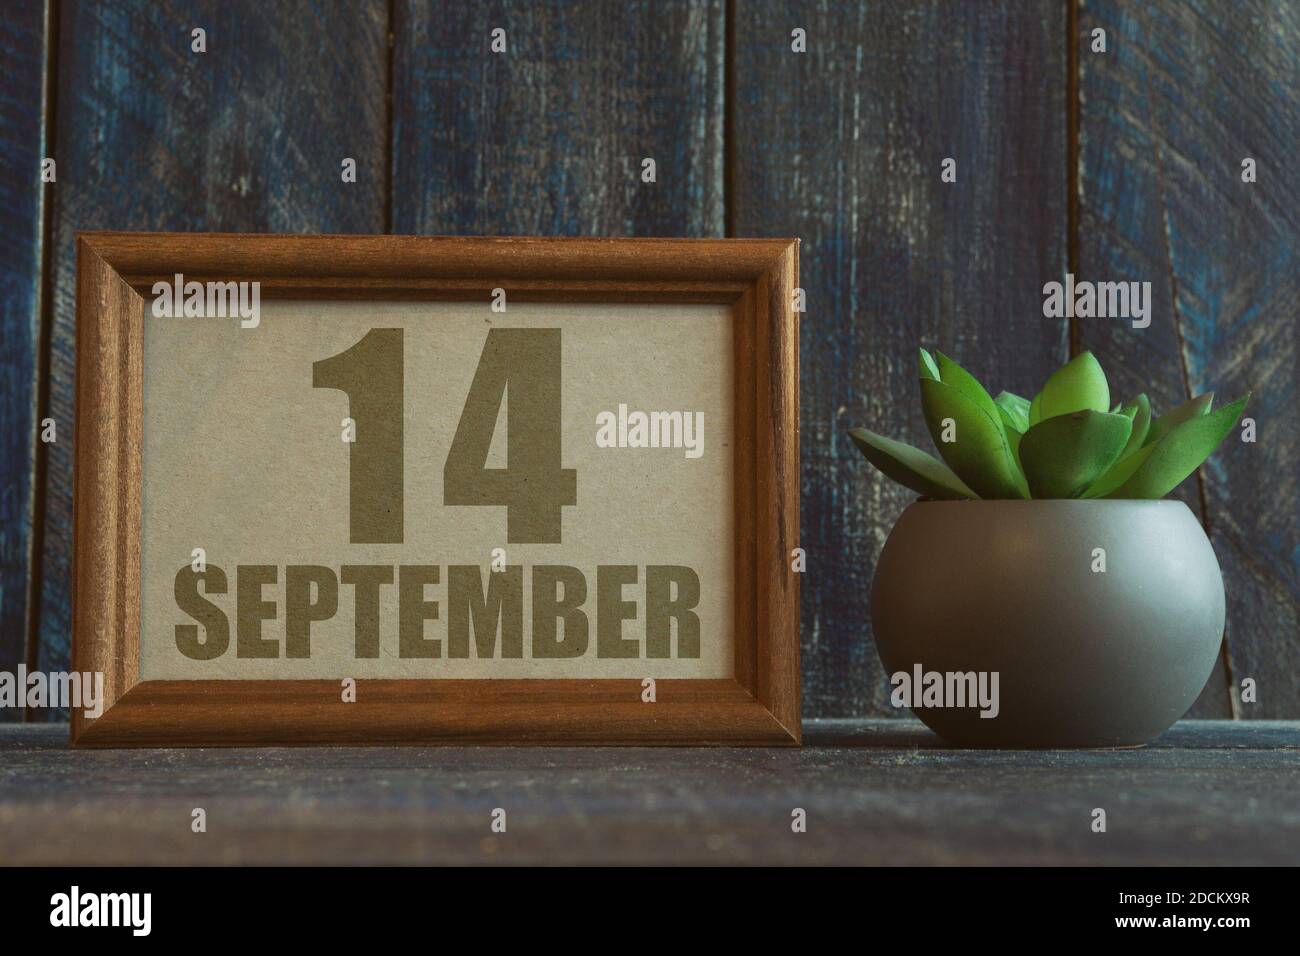 14 septembre. Jour 14 du mois, date dans le cadre à côté de succulent sur fond de bois automne mois, jour de l'année concept Banque D'Images